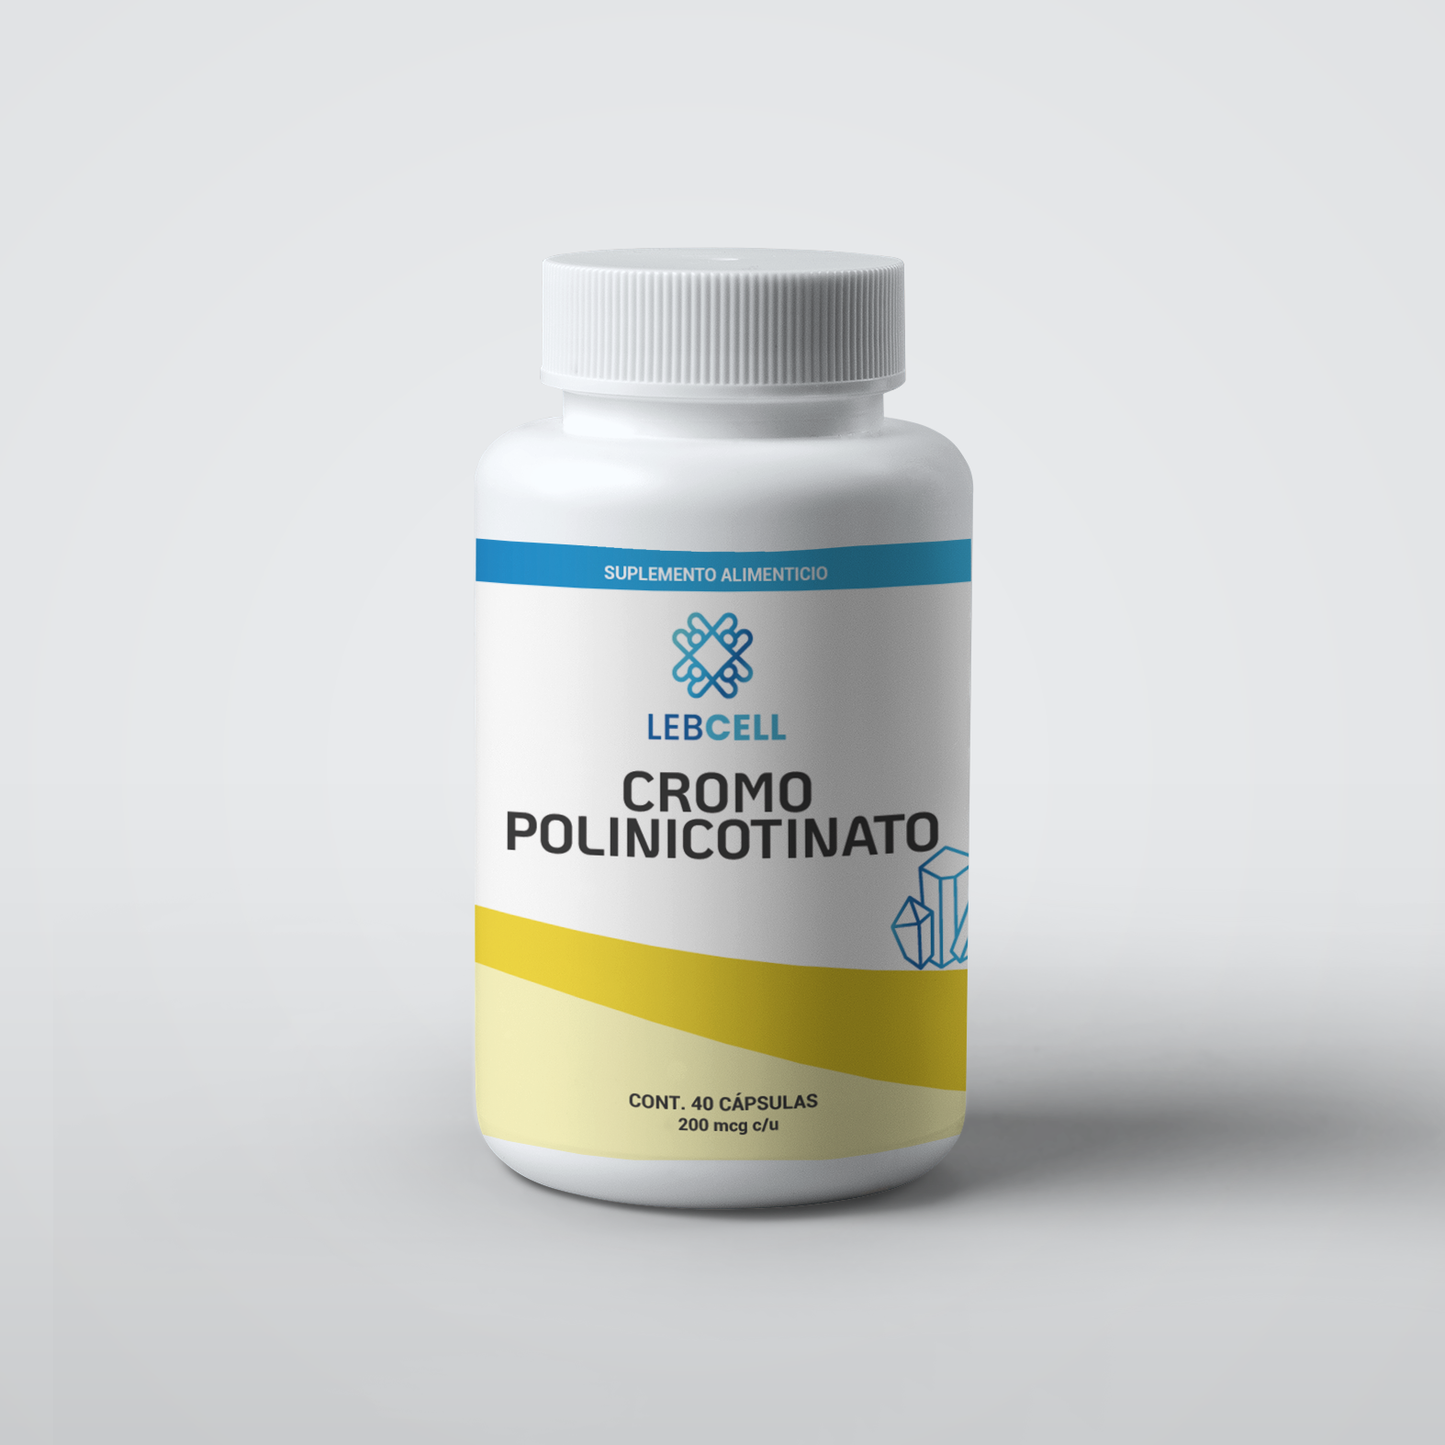 Cromo polinicotinato; Imagen de cerca de un medicamento para el metabolismo.